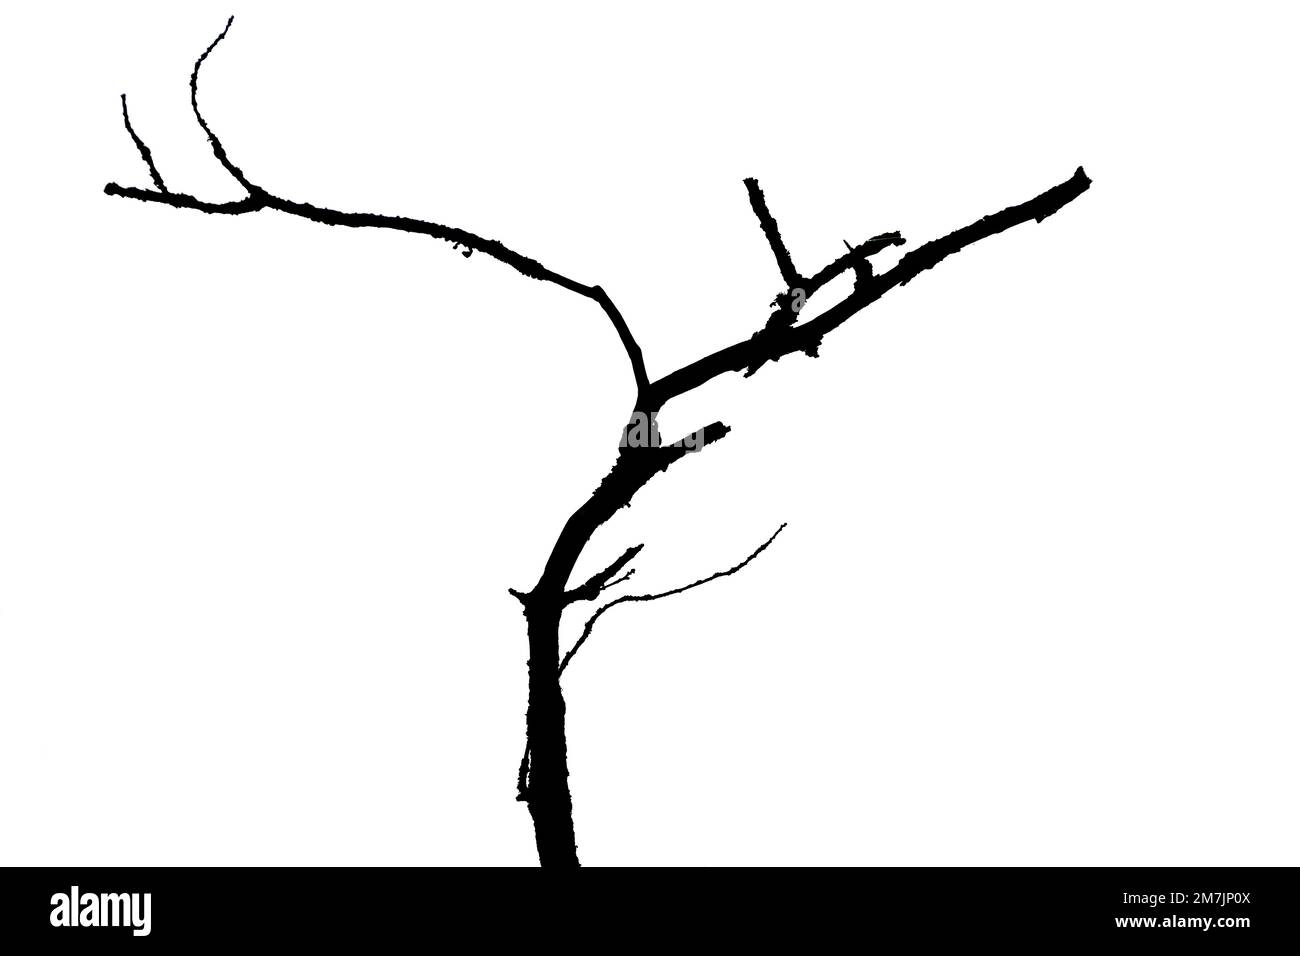 Illustrazione di una silhouette nera di rami d'albero isolati sullo sfondo bianco vuoto Foto Stock